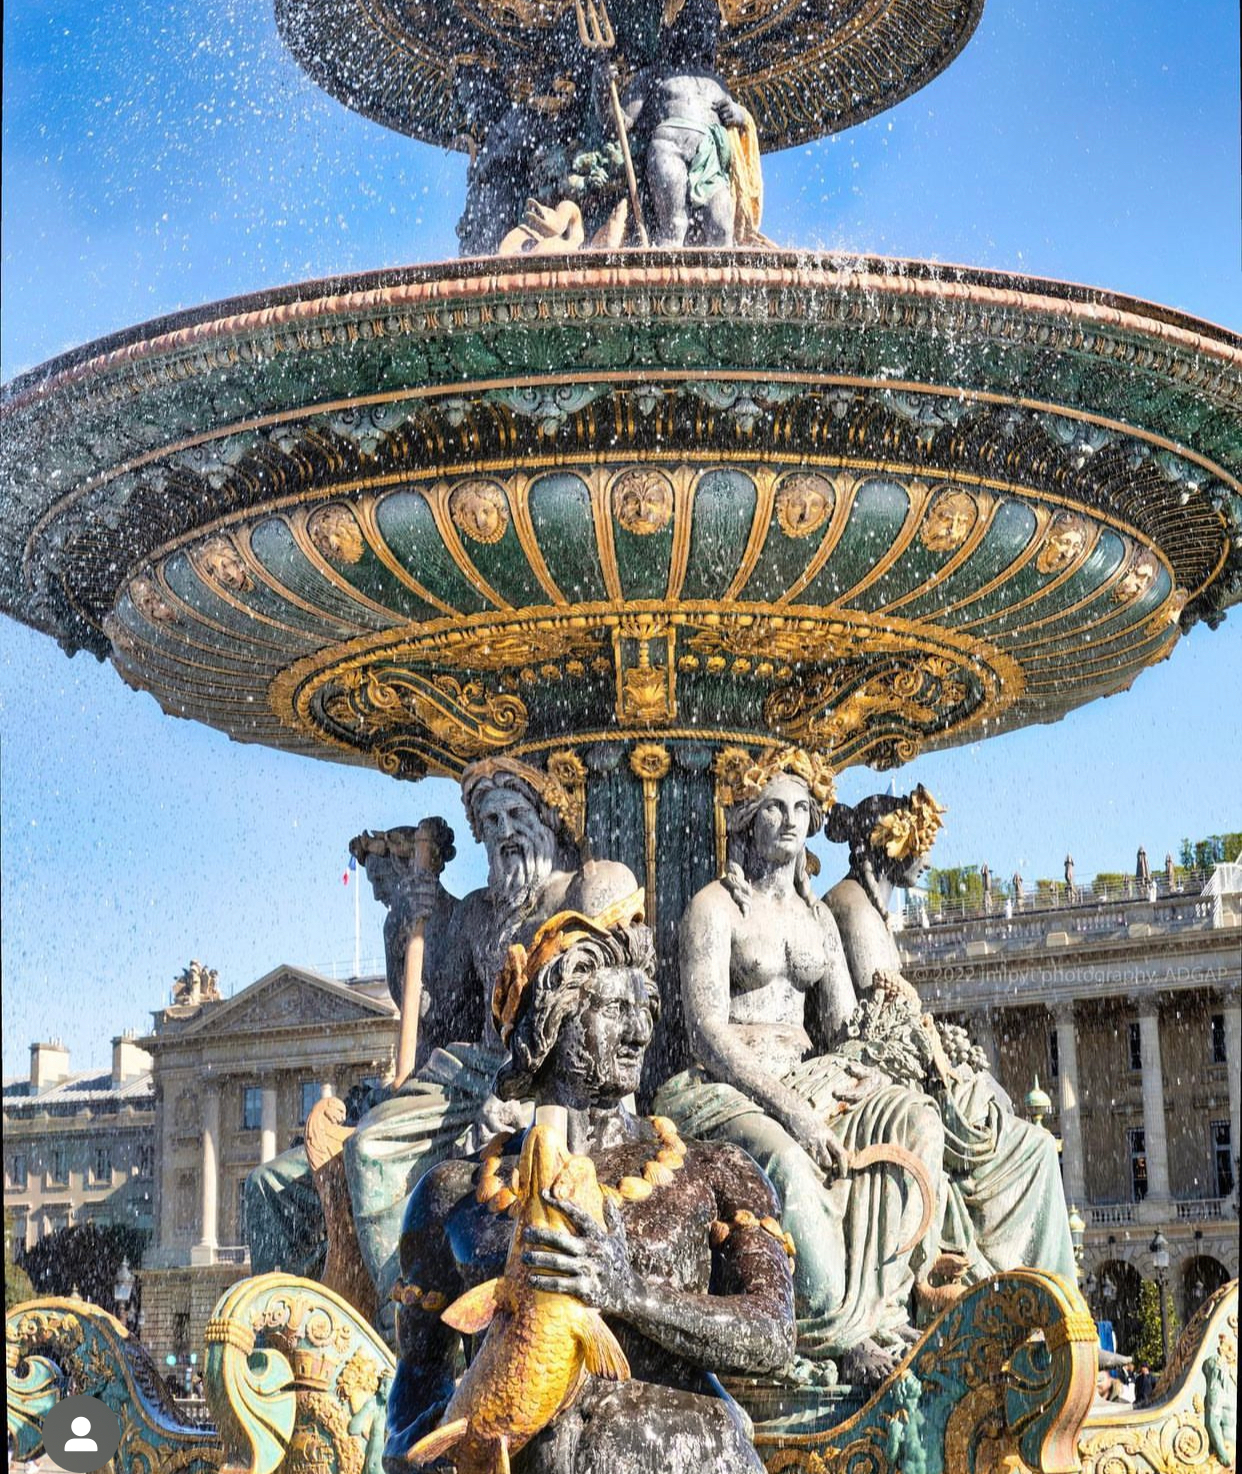 place de la concorde fountain in paris